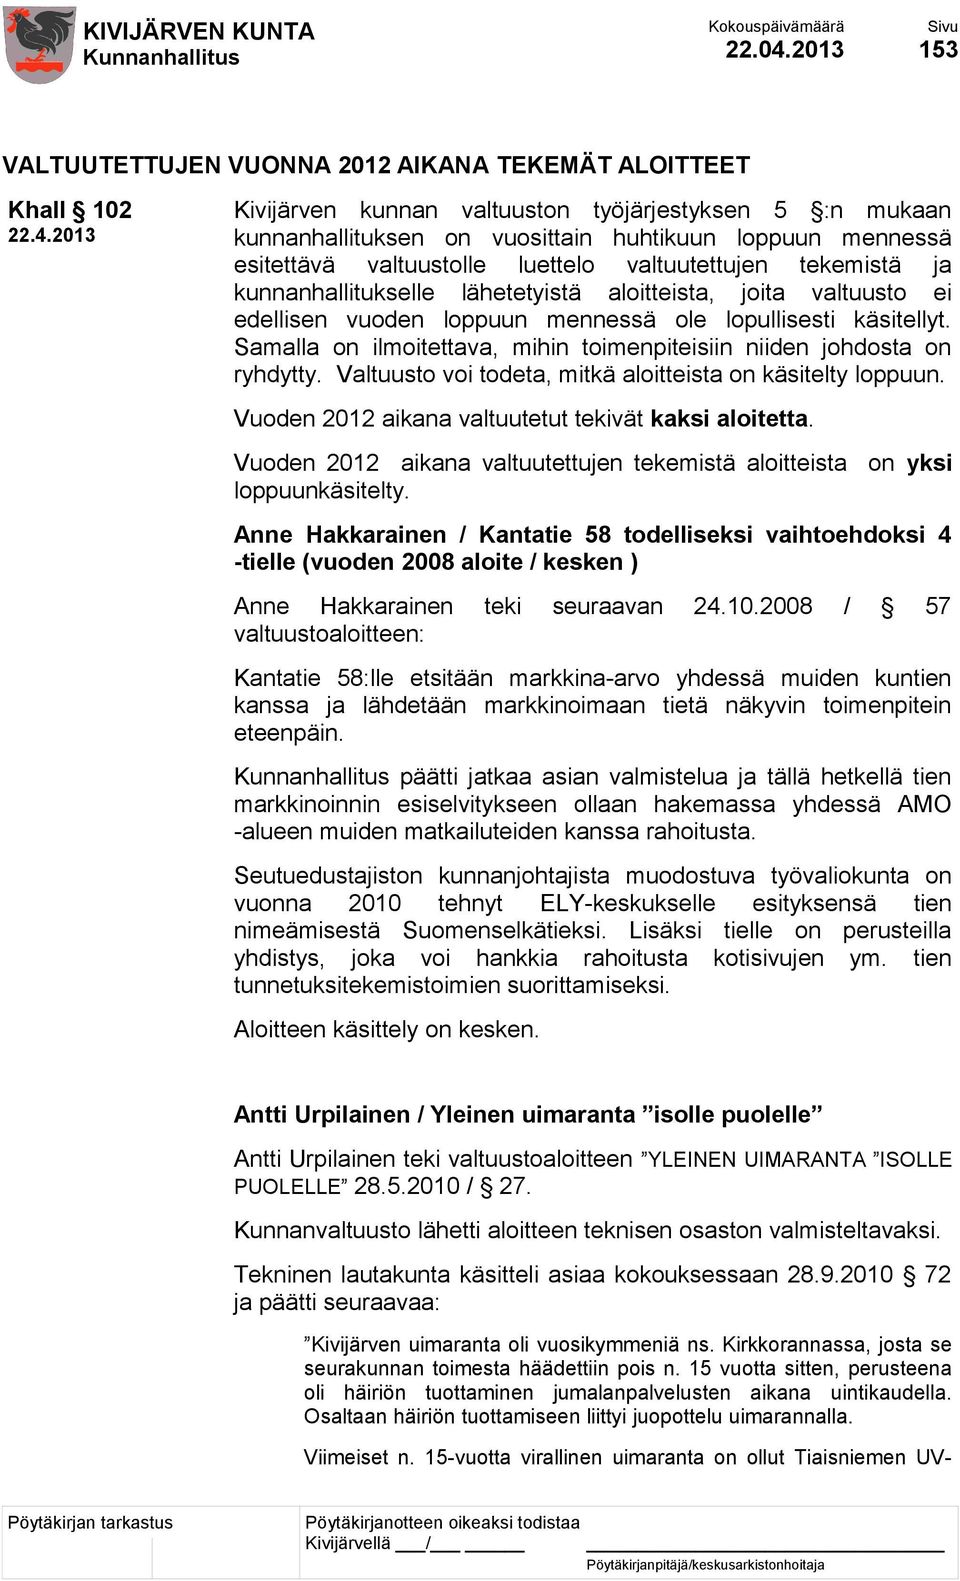 2013 Kivijärven kunnan valtuuston työjärjestyksen 5 :n mukaan kunnanhallituksen on vuosittain huhtikuun loppuun mennessä esitettävä valtuustolle luettelo valtuutettujen tekemistä ja